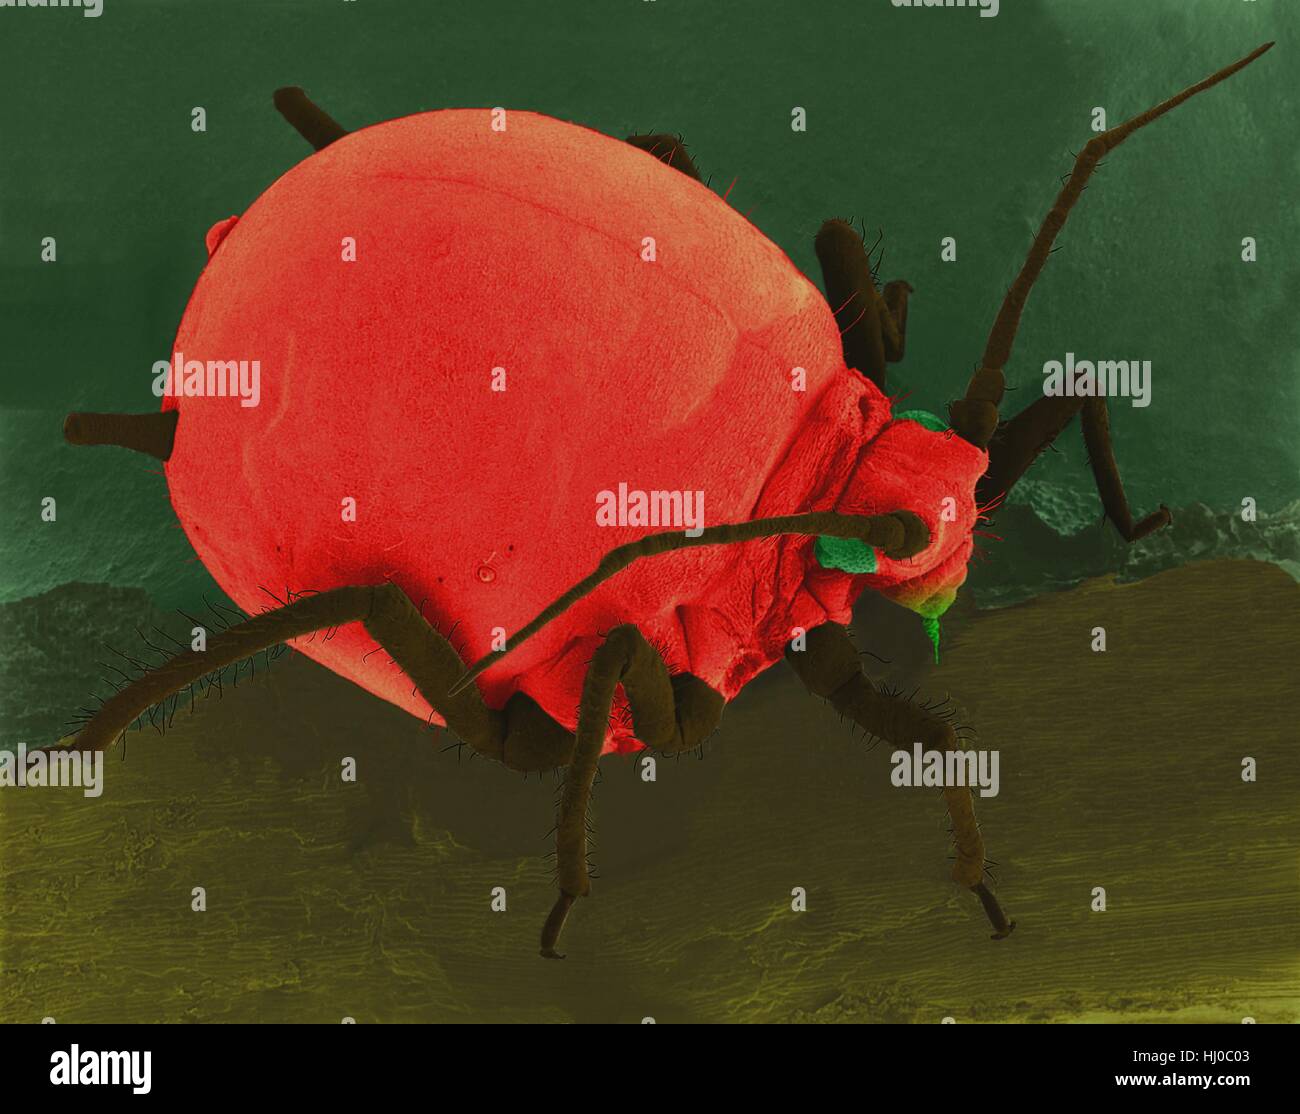 Farbige scanning Electron Schliffbild (SEM) von Baumwolle Blattlaus (Aphis Gossypii) auf einen Hibiskus-Blatt. Auch genannt die Melone Blattlaus ist häufig im Zusammenhang mit Ausbrüchen auf Baumwolle im Südosten. Dieses Insekt hat viele Generationen pro Jahr und ist oft resistent gegen Insektizide. Diese Blattlaus trägt eine isometrische Virus die Gurke Mosaik-Krankheit in Gurken und Tabak Pflanzen verursacht. Vergrößerung: X11 wenn kürzeste Achse bei 25 Millimetern gedruckt. Stockfoto